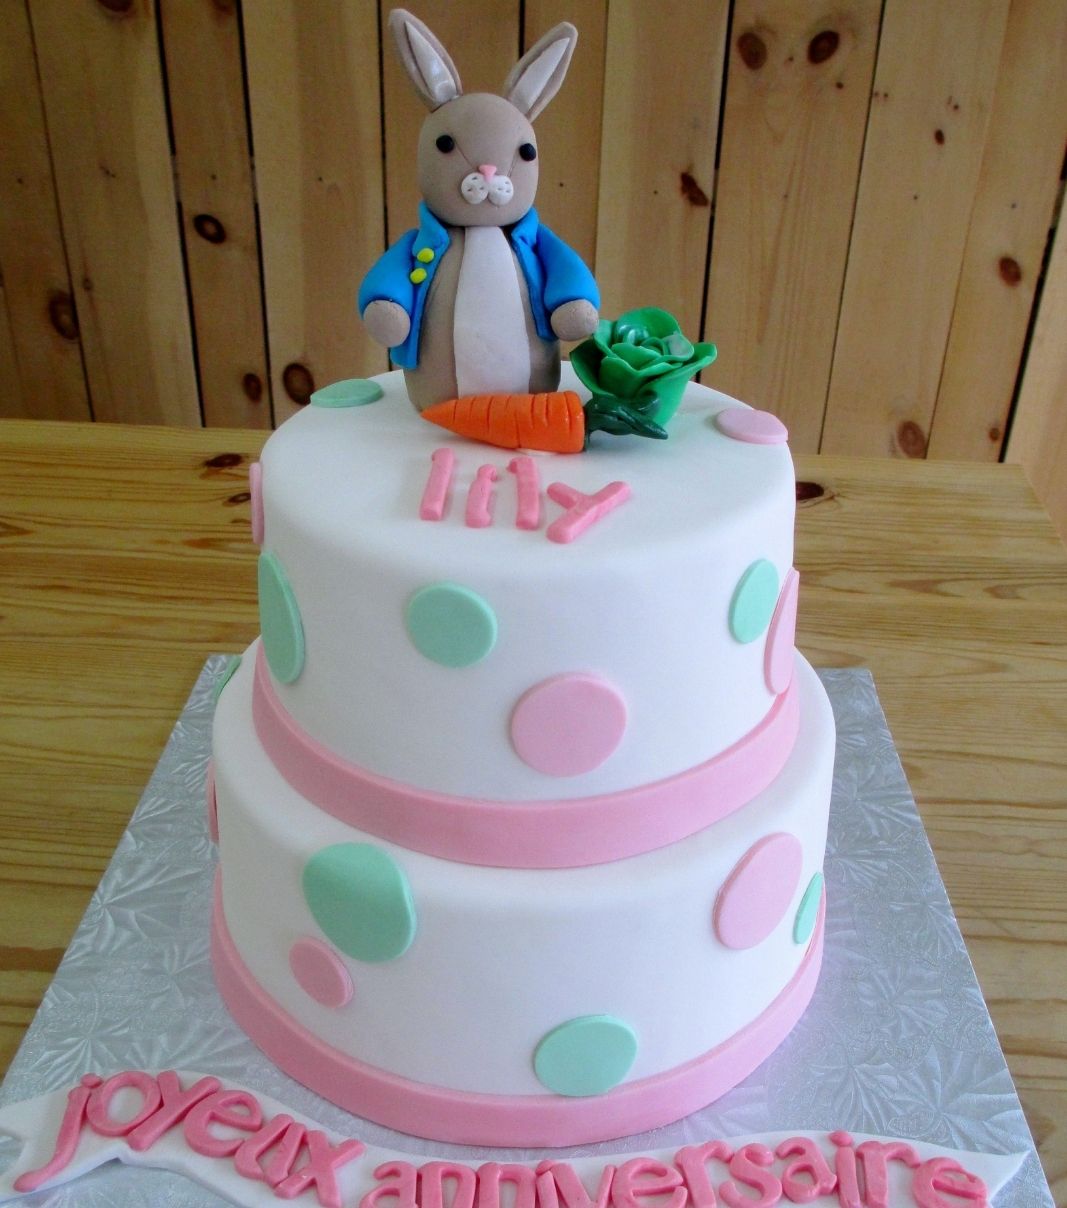 Gâteau d'anniversaire sur mesure de Lily: gâteau de 2 étages à thématique de Jeannot Lapin avec une couverture en fondant blanc et pastel et décoré d'un lapin et de légumes en fondant.